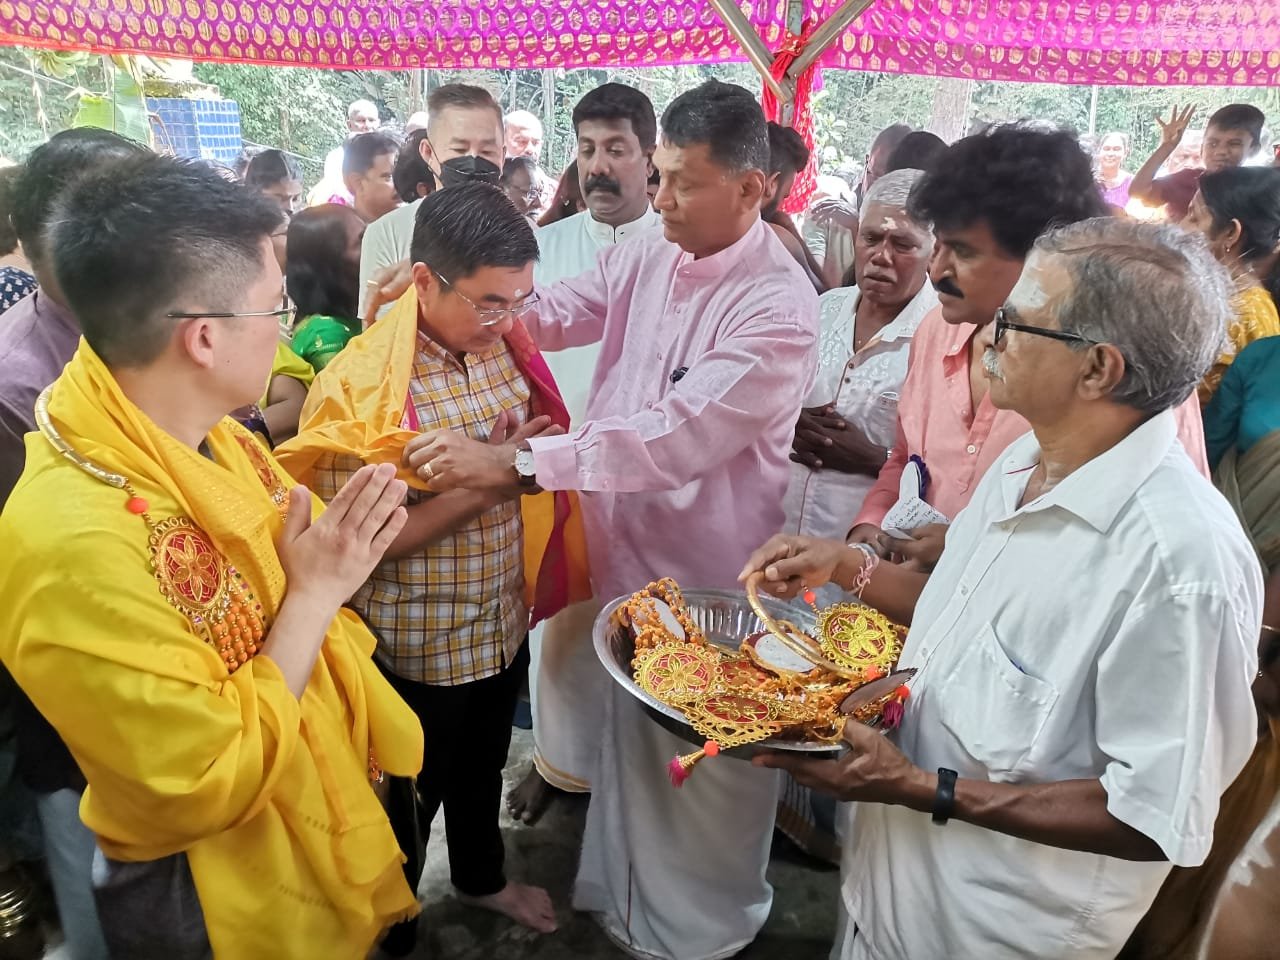 黄家和（左起）与郑国霖参与大宝森节庆典，获庙方领导人热烈迎接与献上祈福饰品。